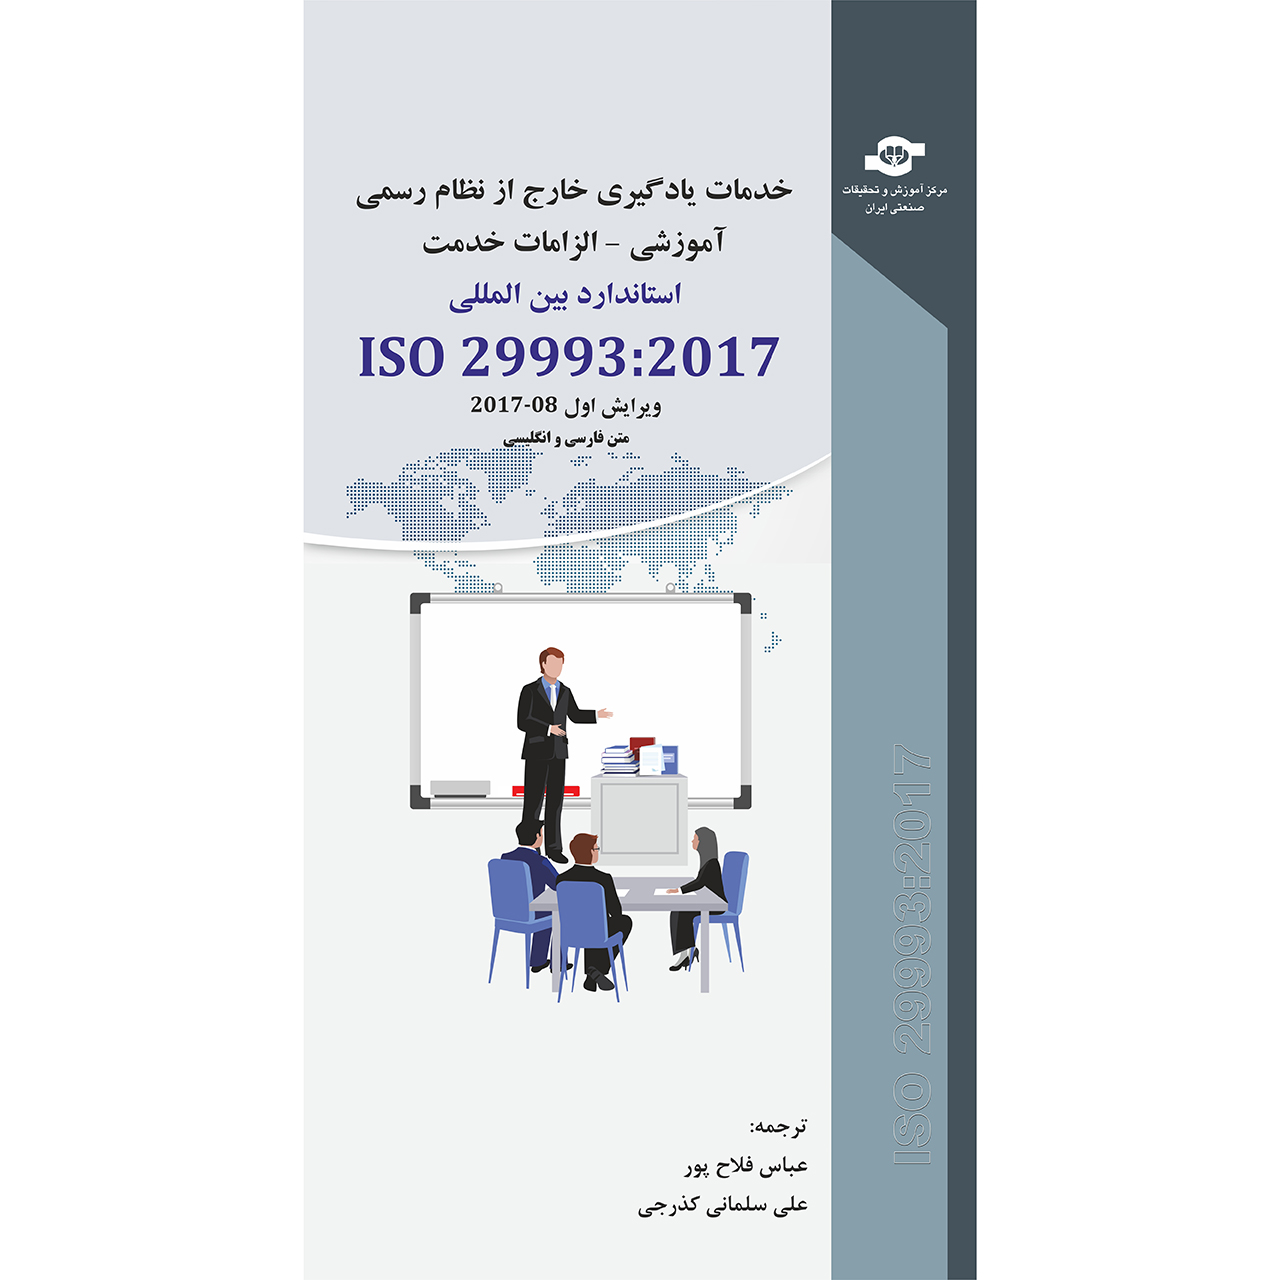 کتاب استاندارد بین المللی ISO 29993-2017 اثر عباس فلاح پور، علی سلمانی کذرجی انتشارات مرکز آموزش و تحقیقات صنعتی ایران